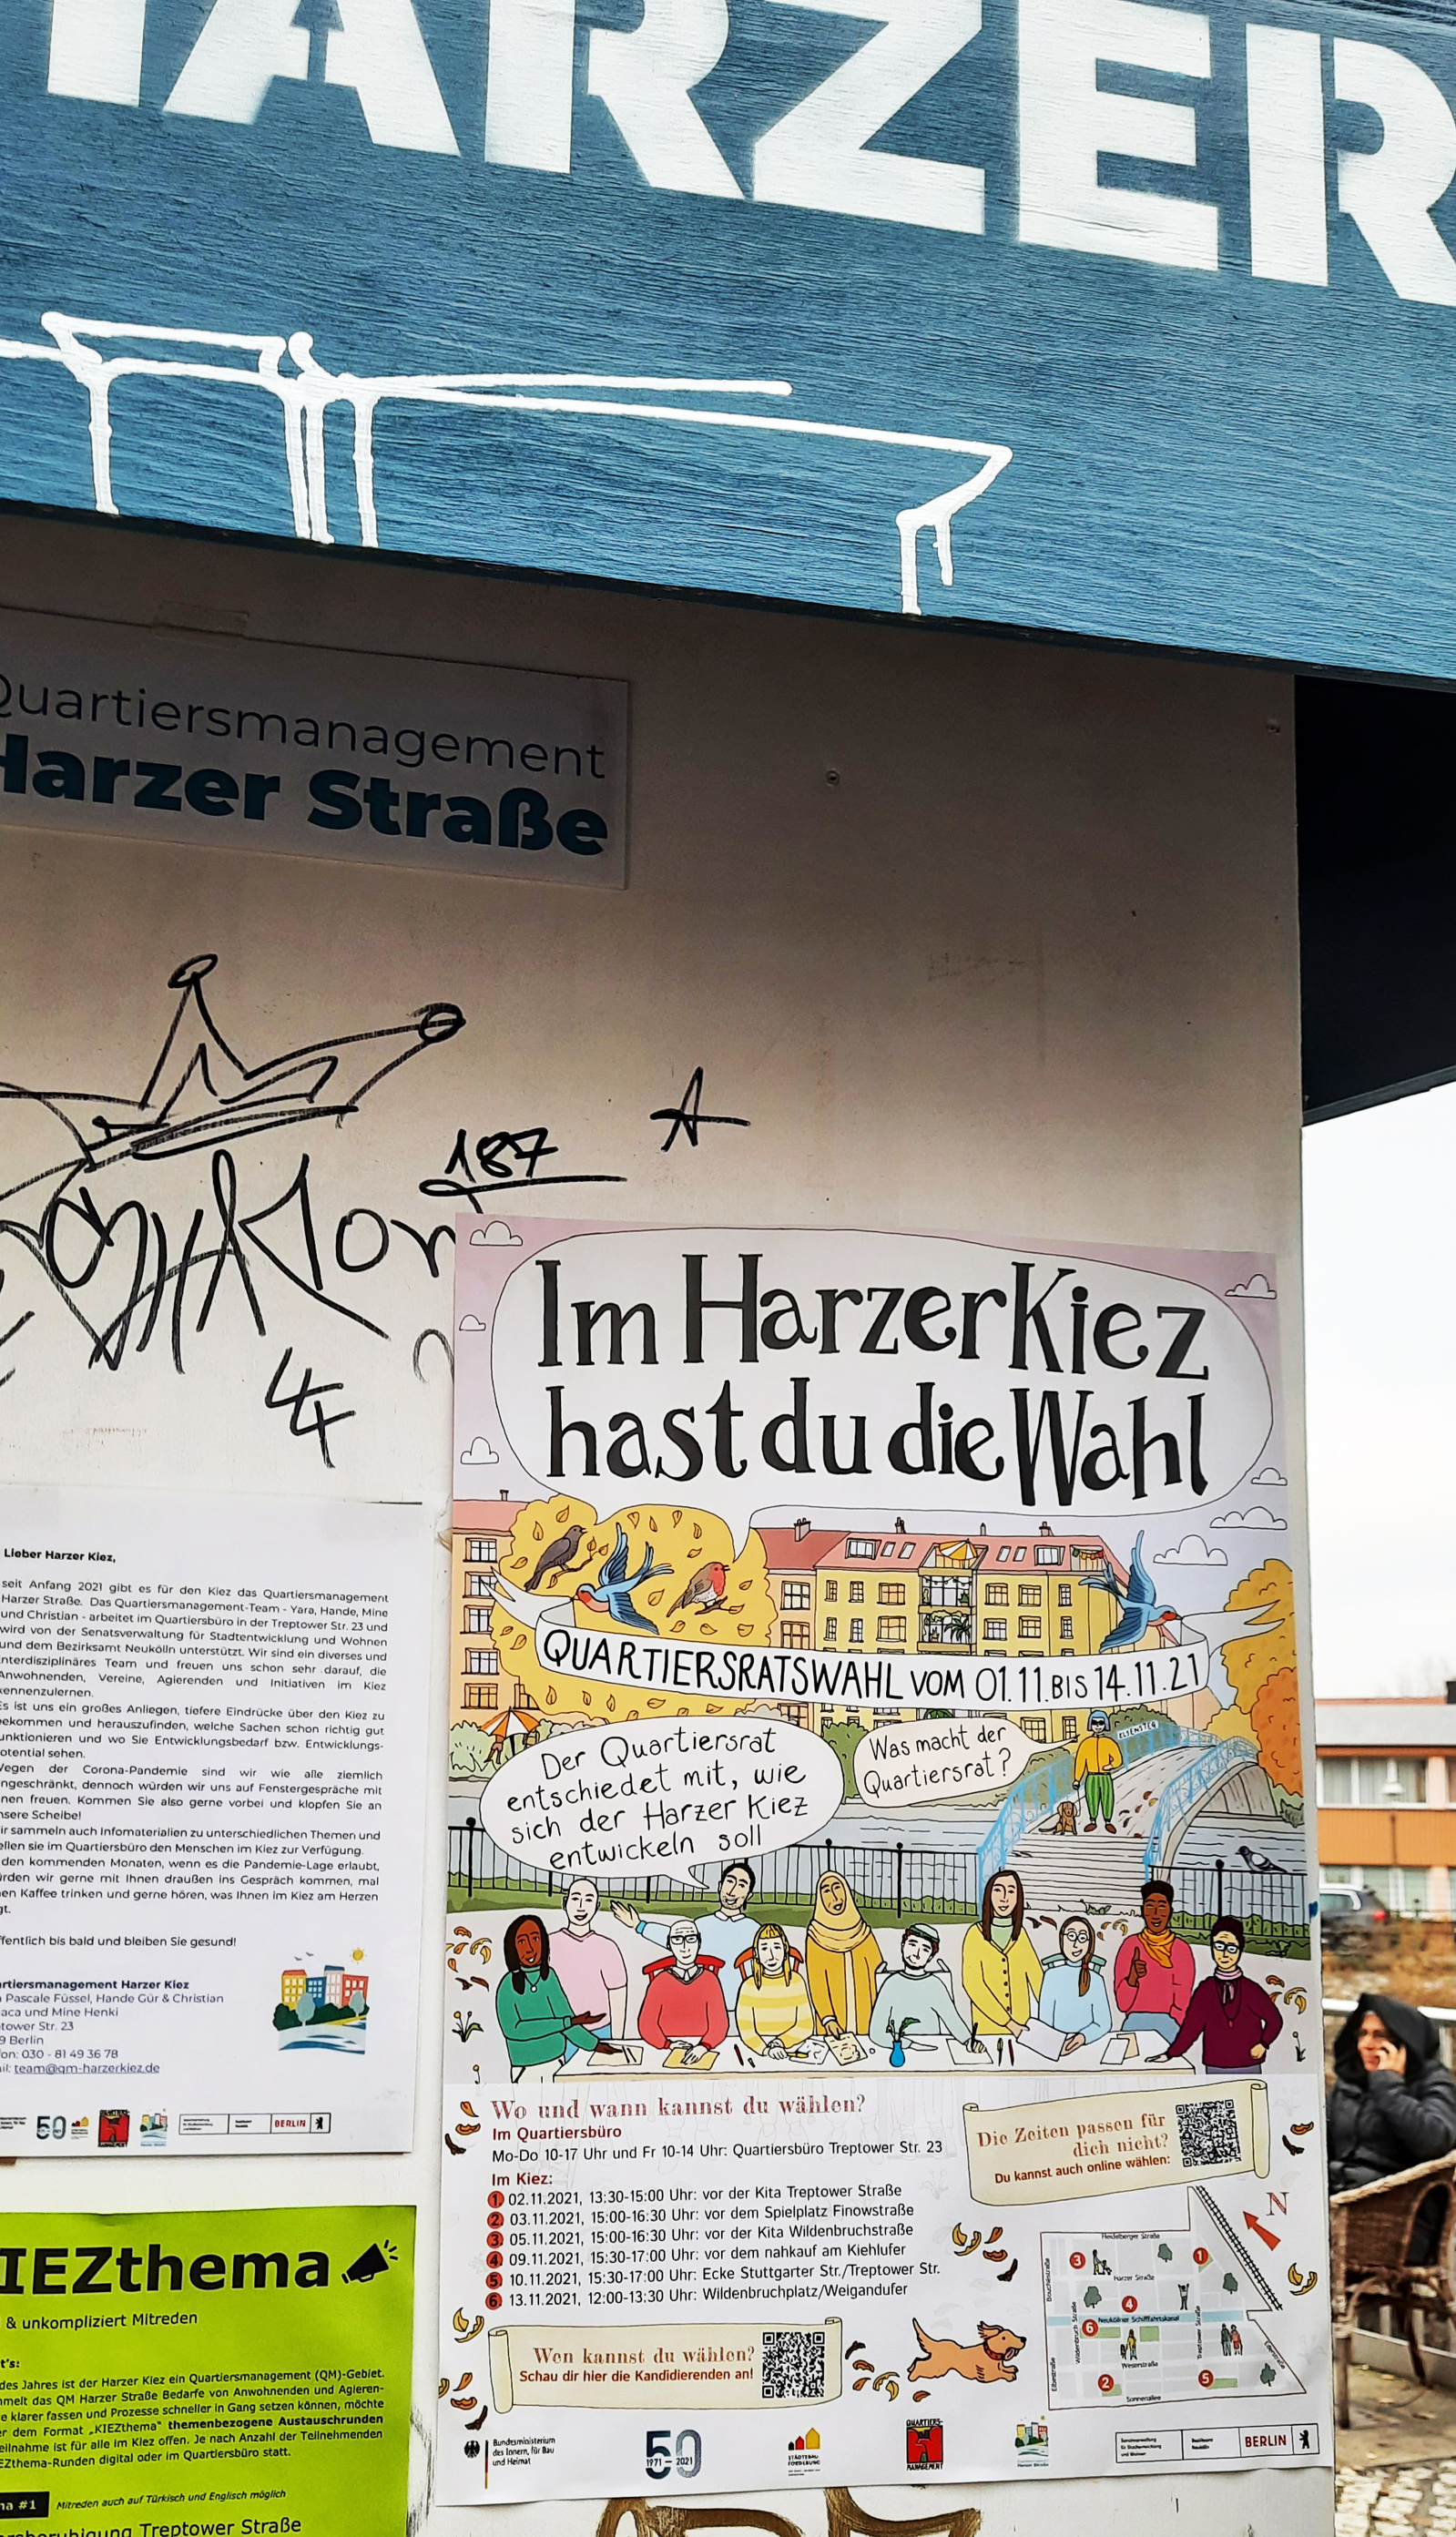 Quartiersmanagement Harzer Straße Wahlkampagne Poster